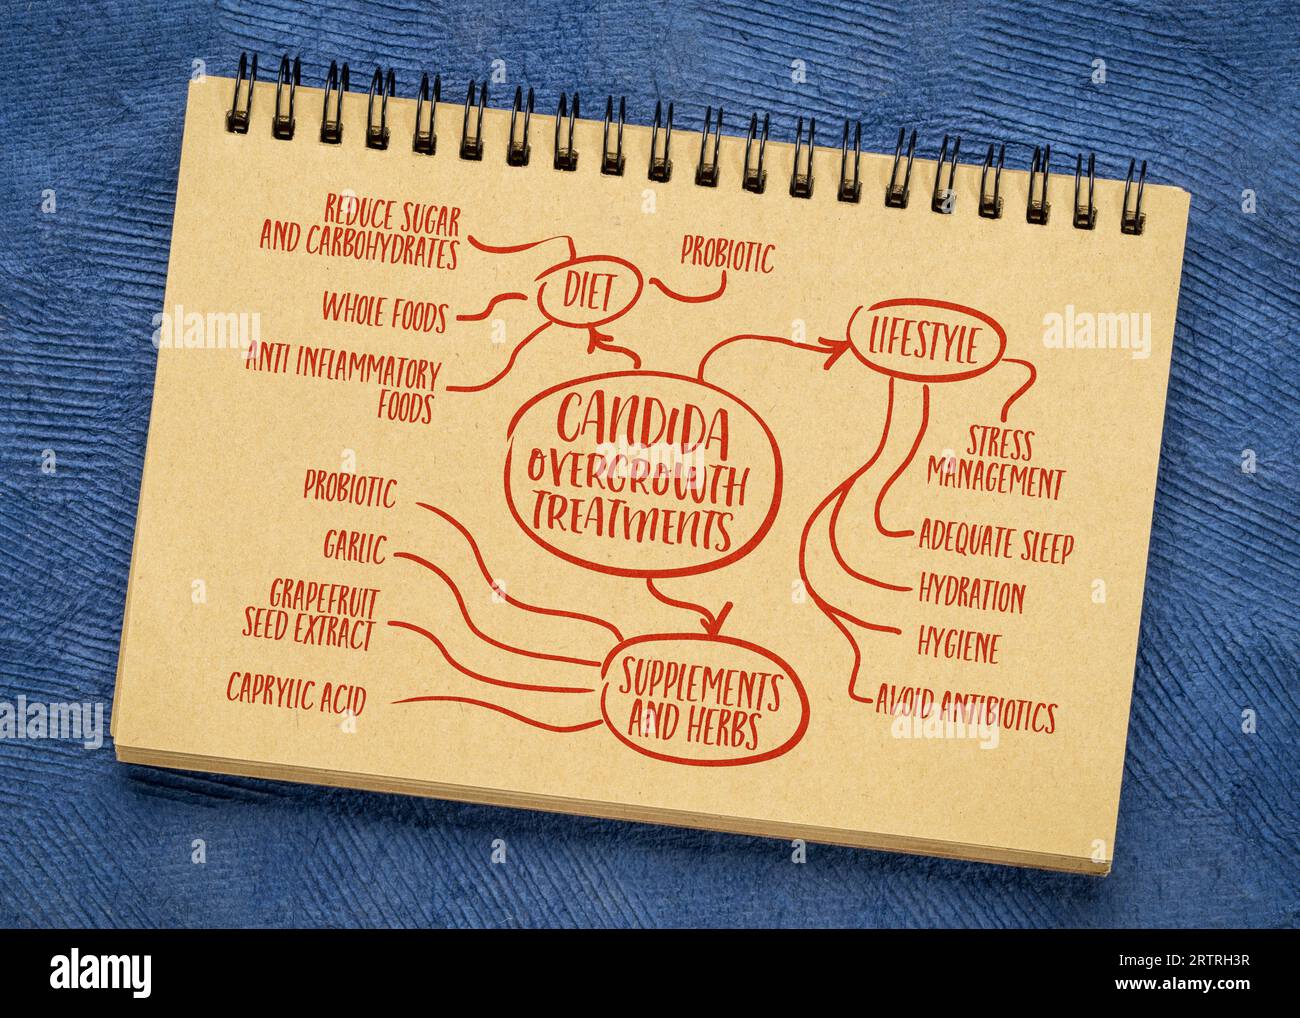 candida-Überwuchsbehandlung - Infografiken oder Mindmap-Skizze auf einem Notebook - Wellness- und Gesundheitskonzept Stockfoto